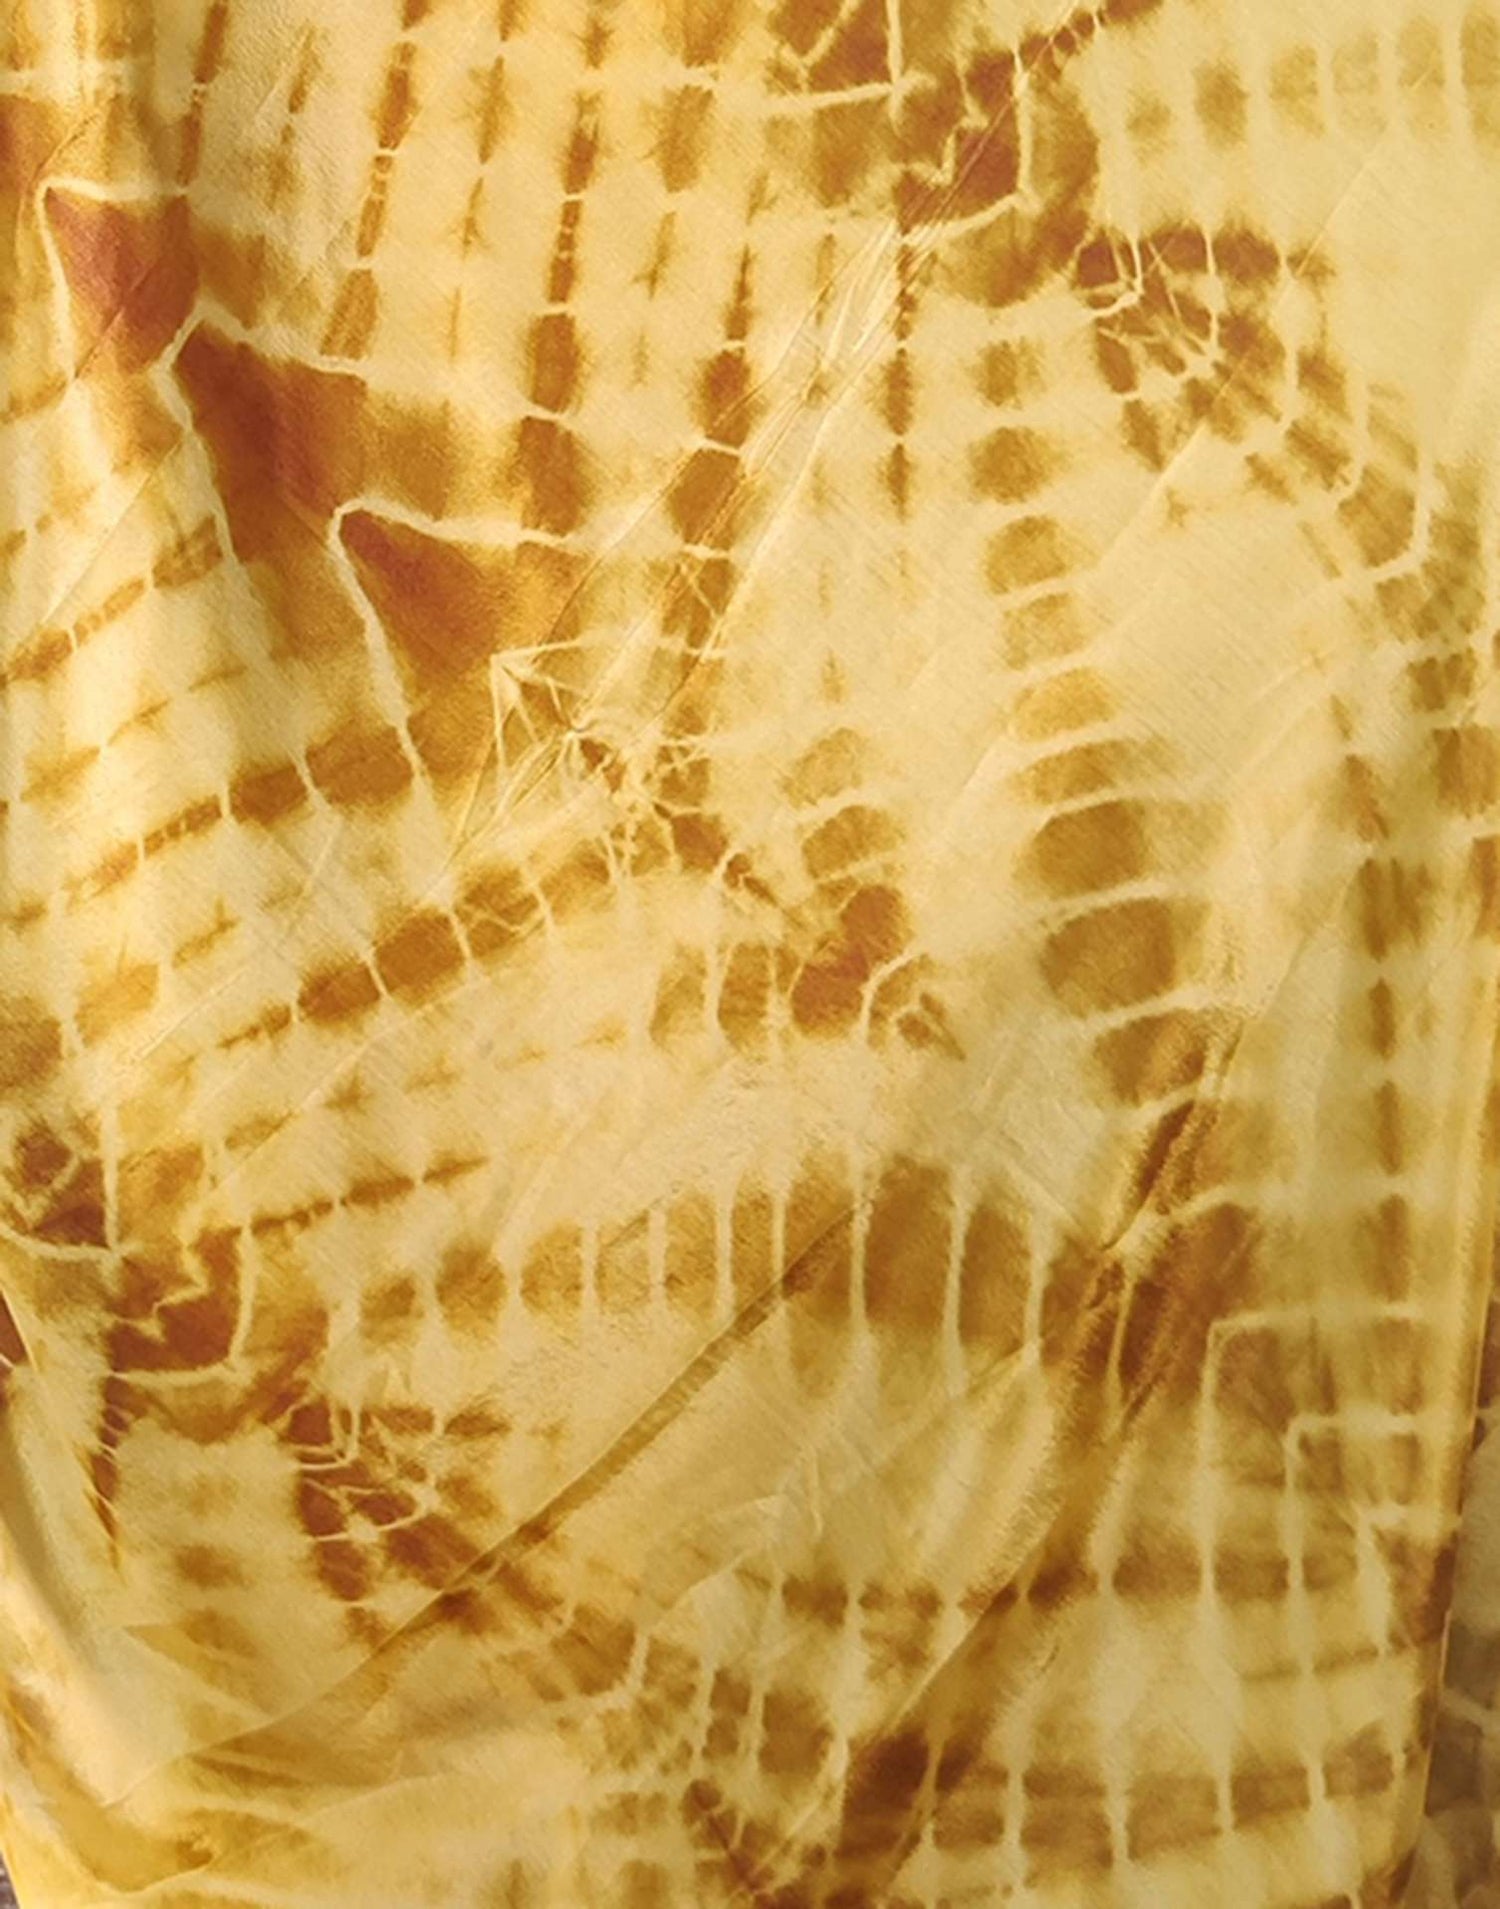 Yellow Printed Silk Pre-draped Saree